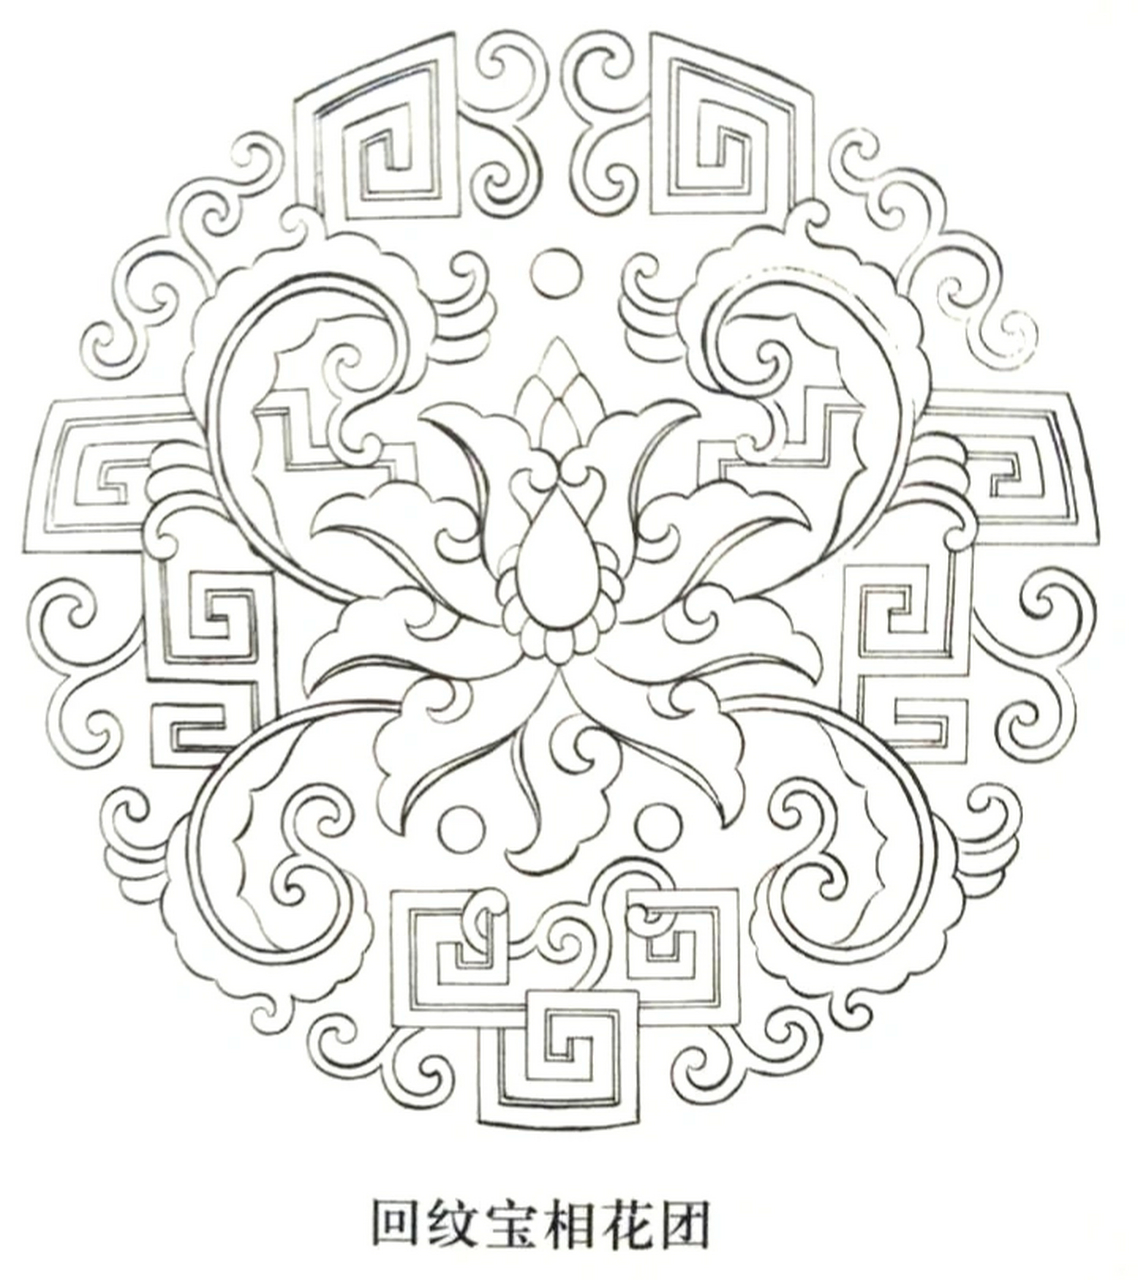 宝相花也是广泛流行于唐代纺织品上的重要装饰纹样.